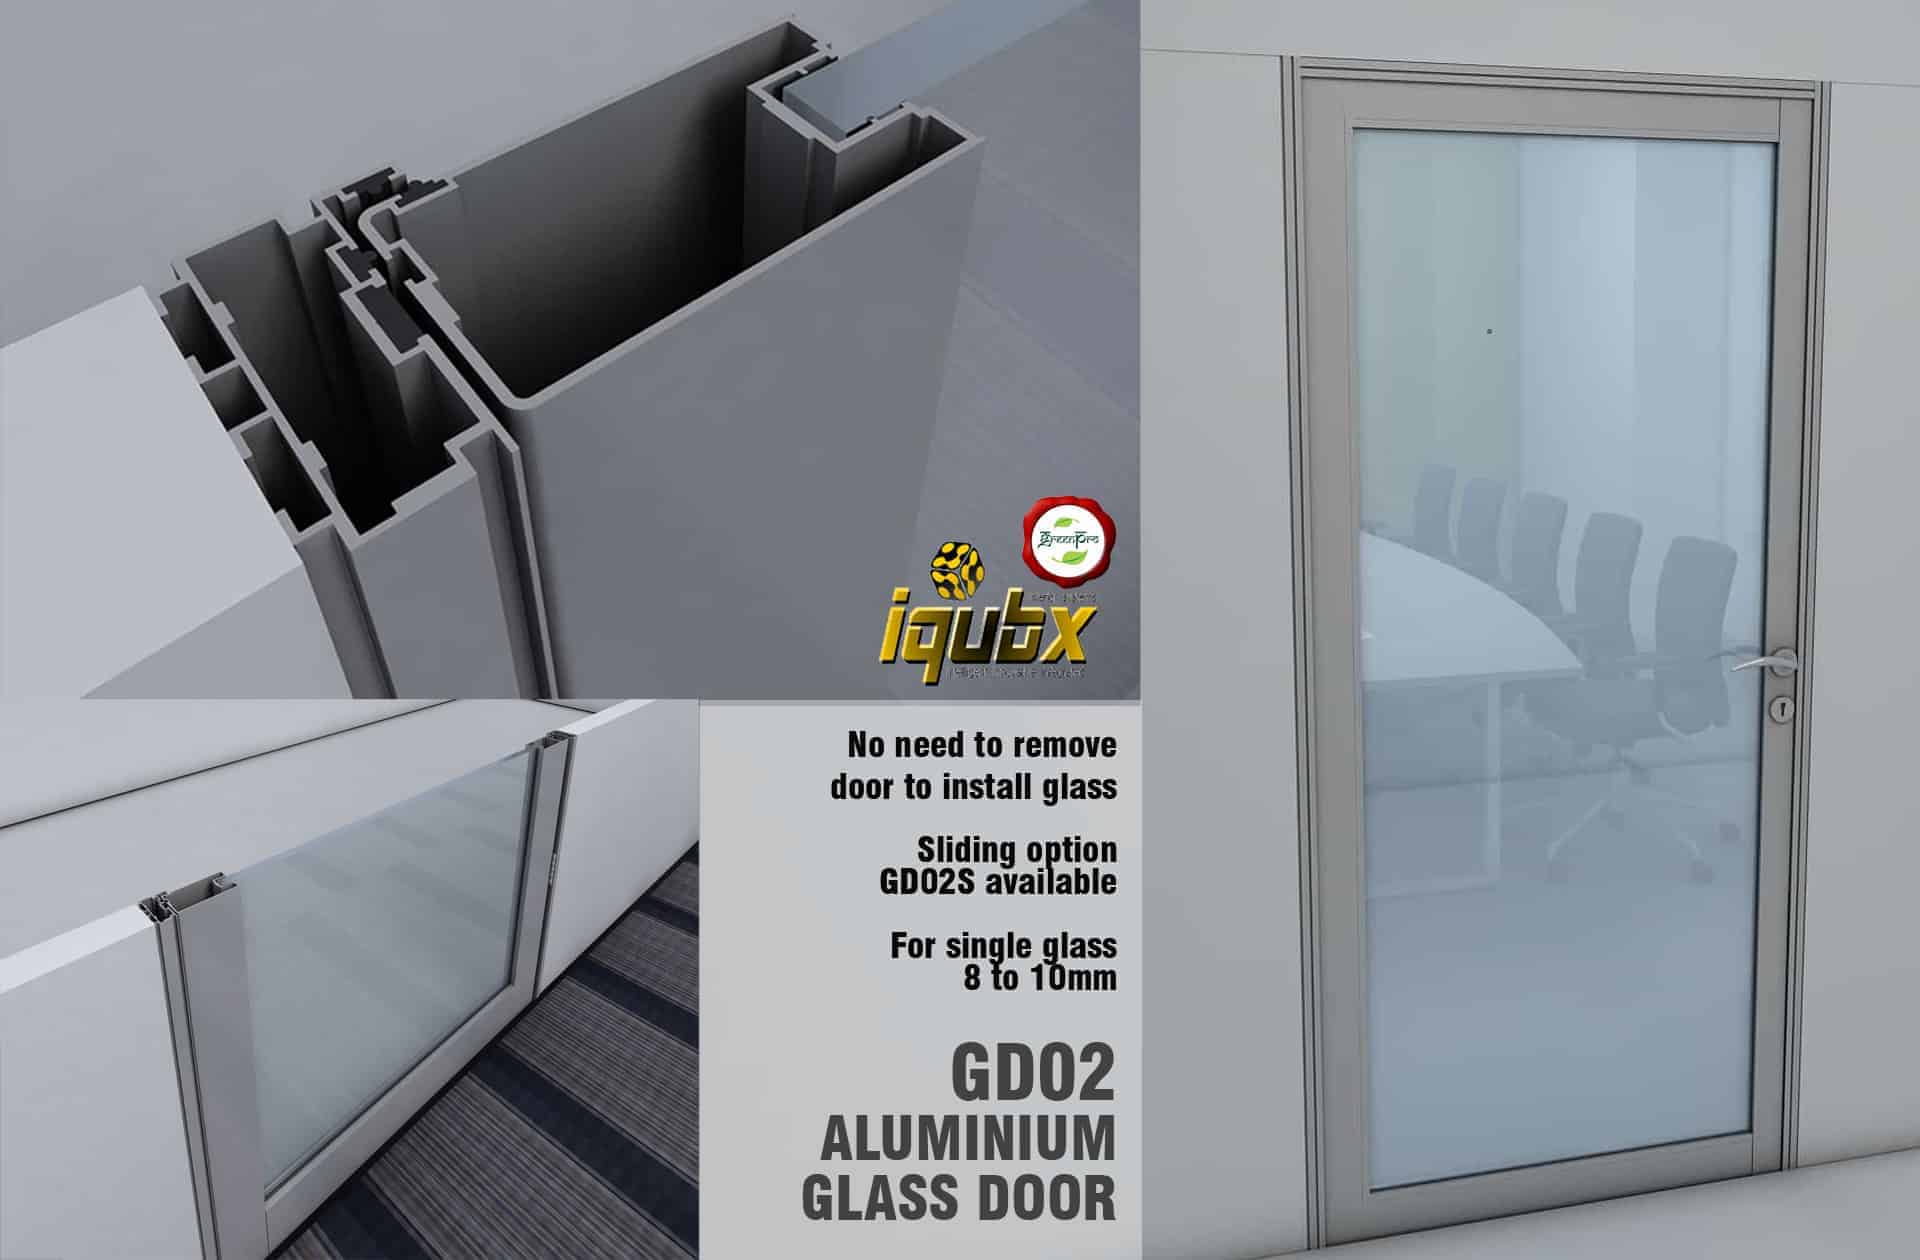 GD02 IQUBX aluminum glass door 2